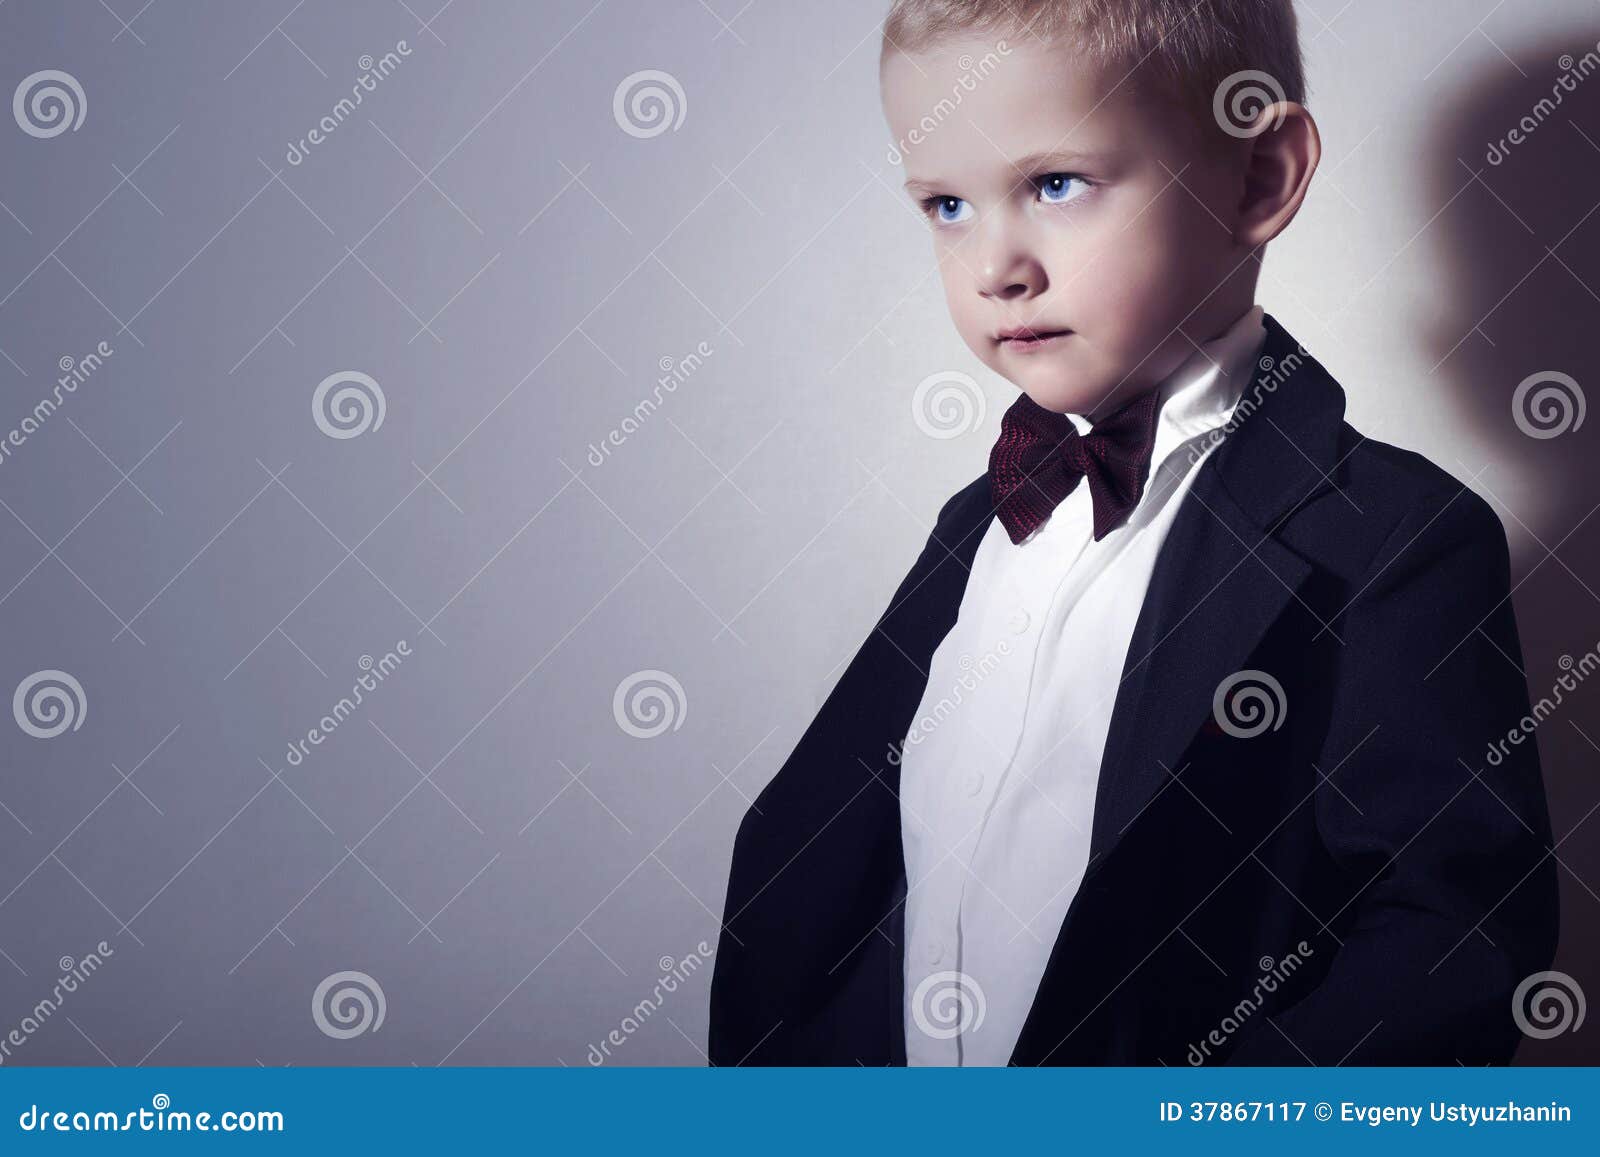 Children Page Boy Wedding Party Formal Graduation Vest suits Outfits 6pc  Set | eBay